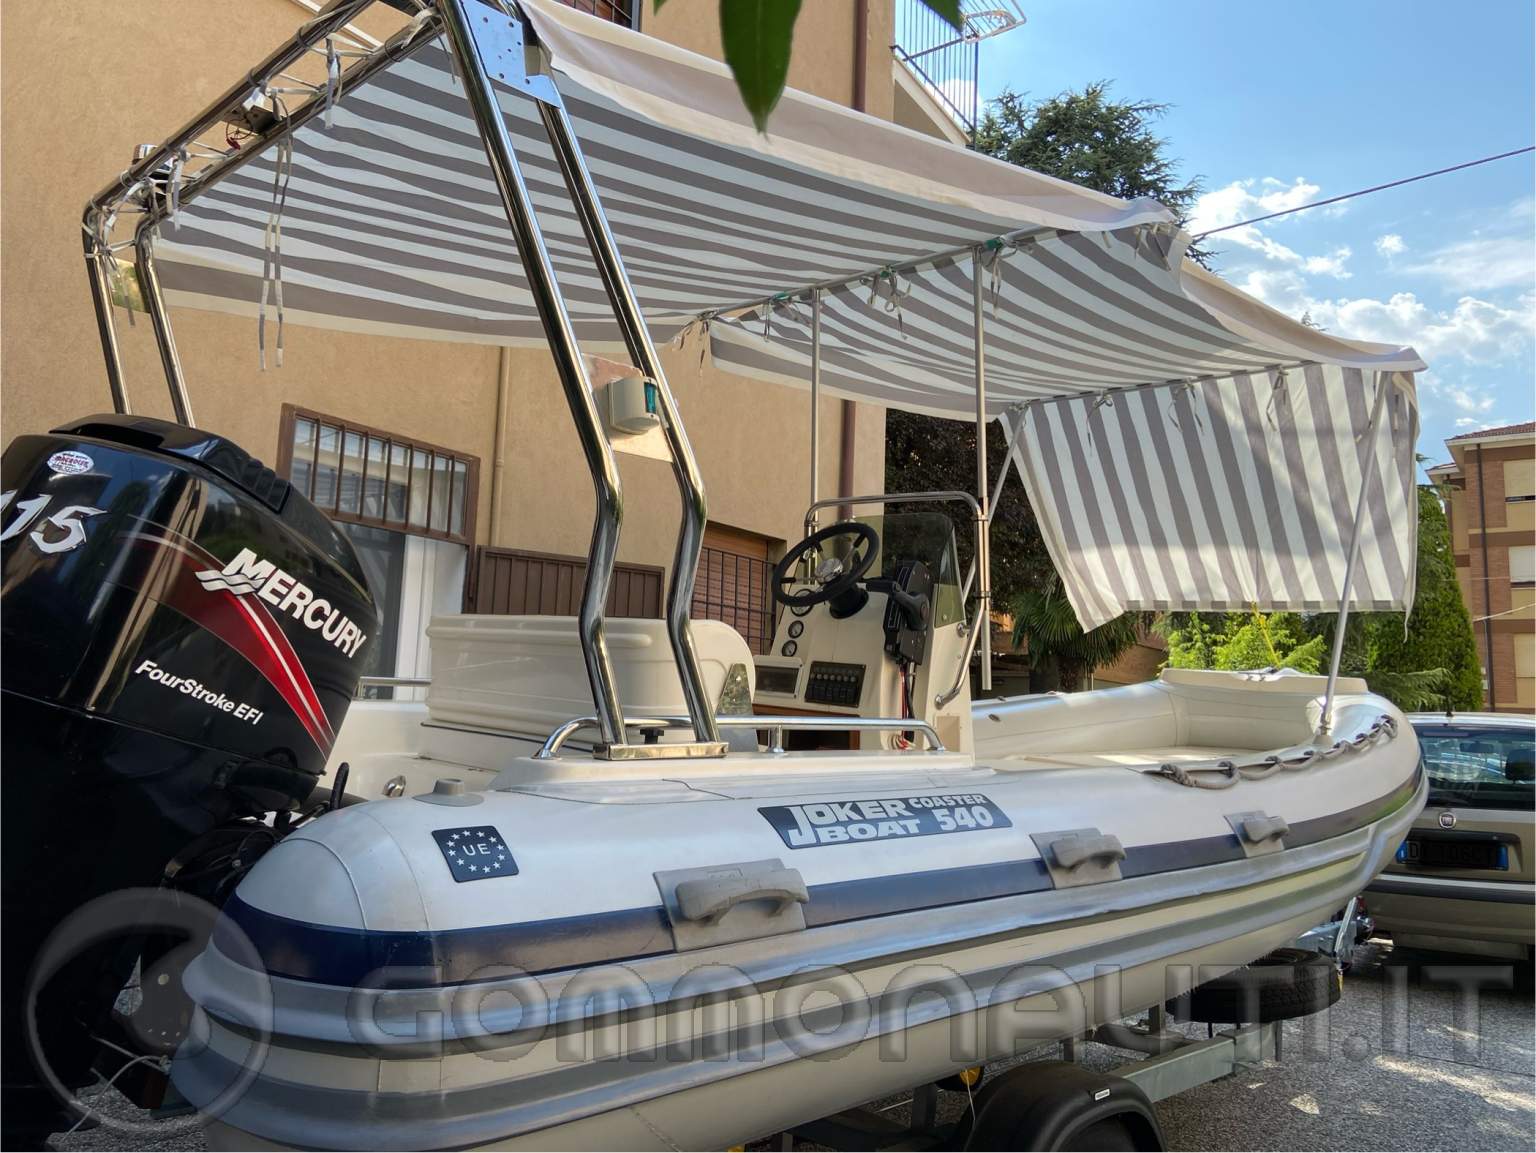 Gommone Joker Boat Coaster 540 Mercury Efi 115 HP 4 tempi